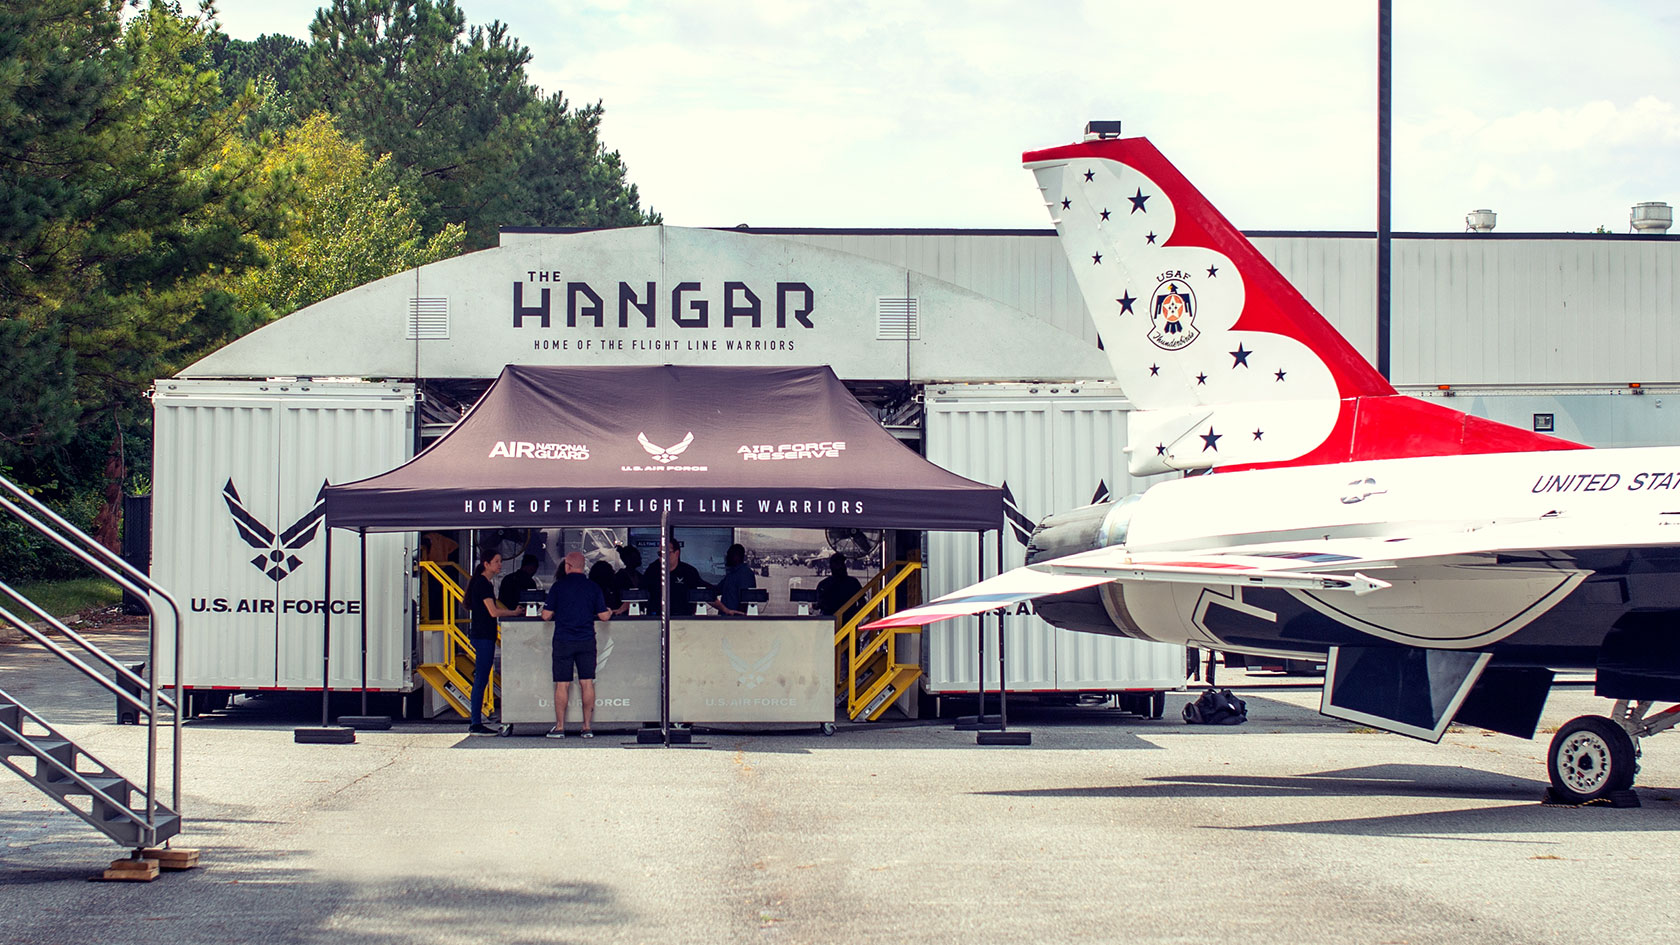 The Hangar Air Force experiential tour